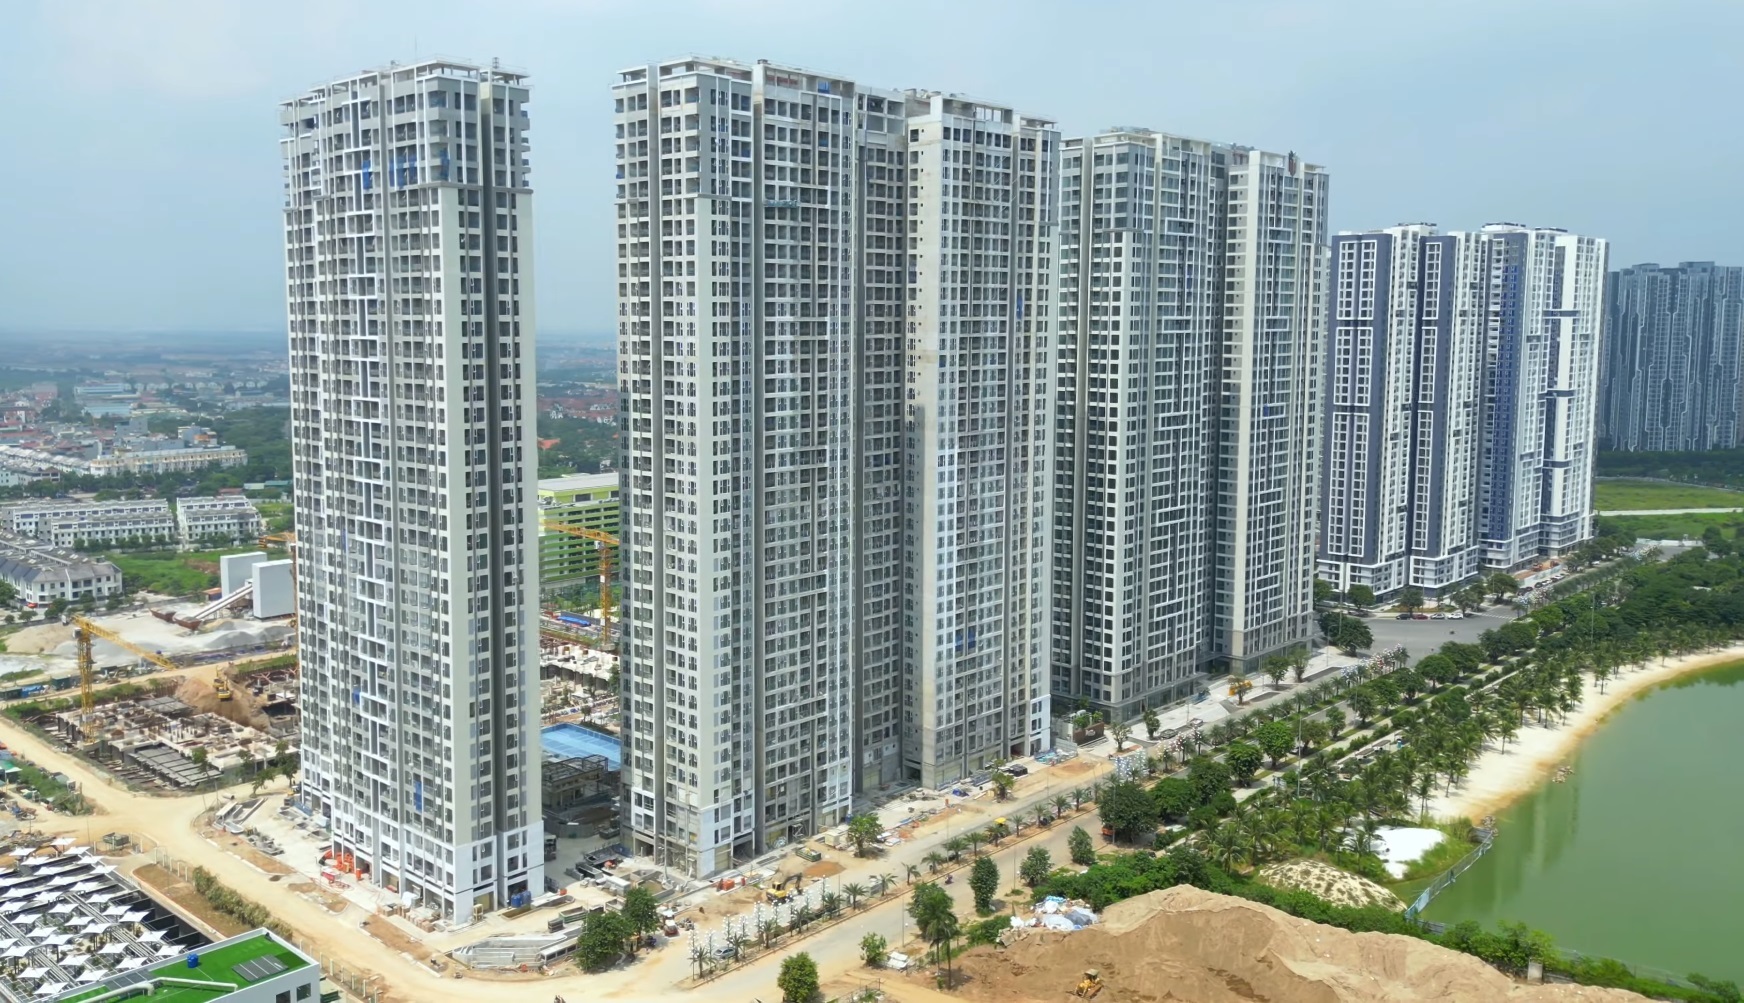 Quy định diện tích nhà chung cư ở Hà Nội: Chỉ tiêu trên giấy khác xa thực tế- Ảnh 1.